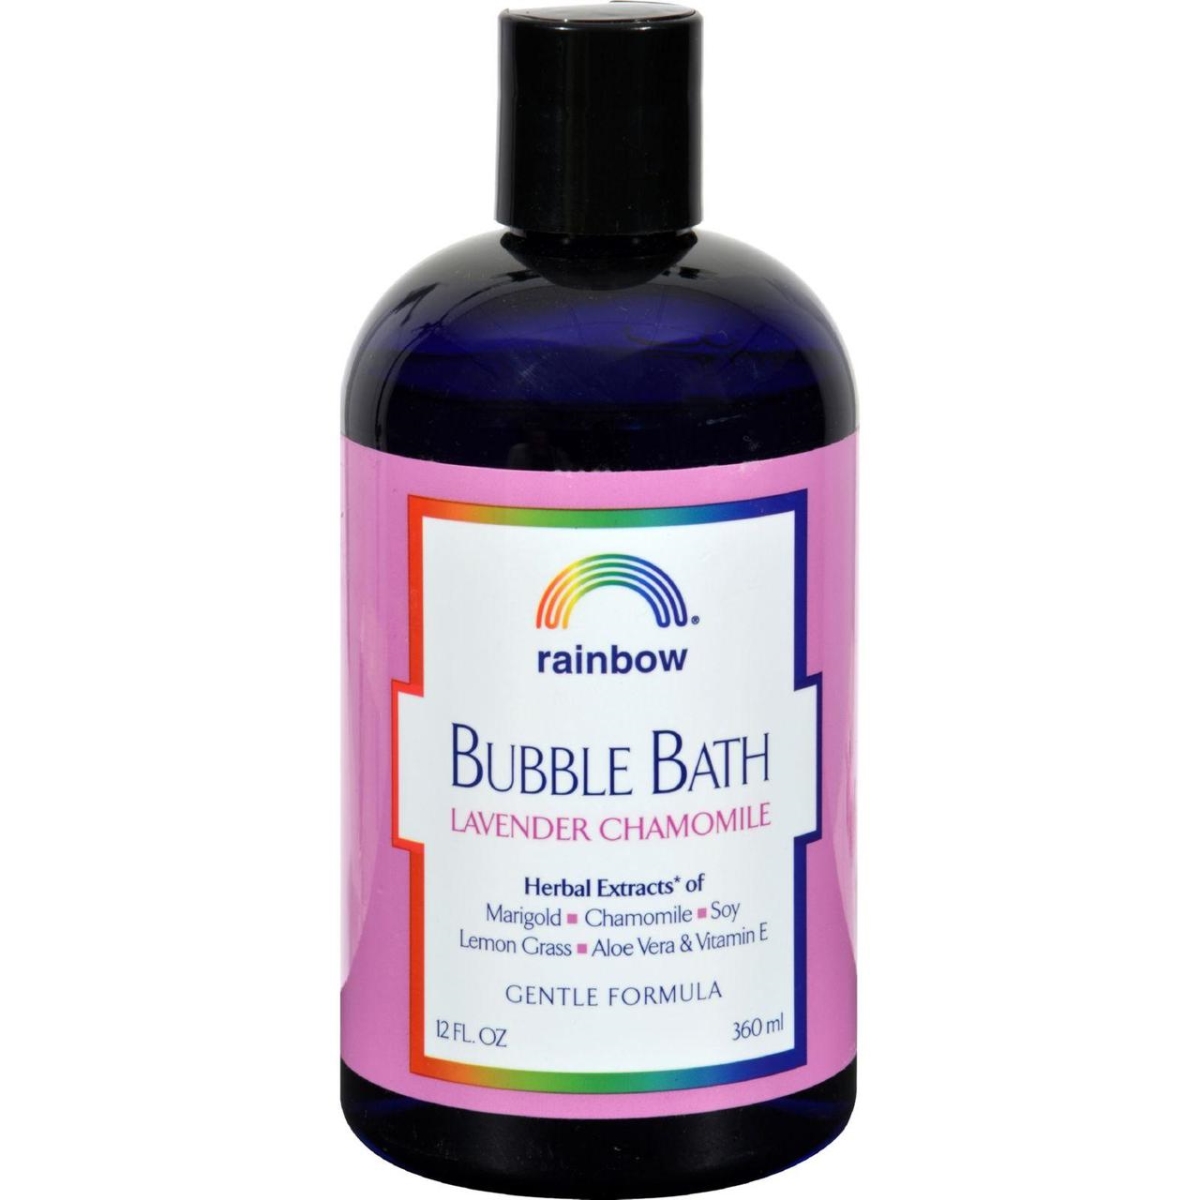 Hg0720516 12 Oz Gentle Bubble Bath Formula - Lavender & Chamomile